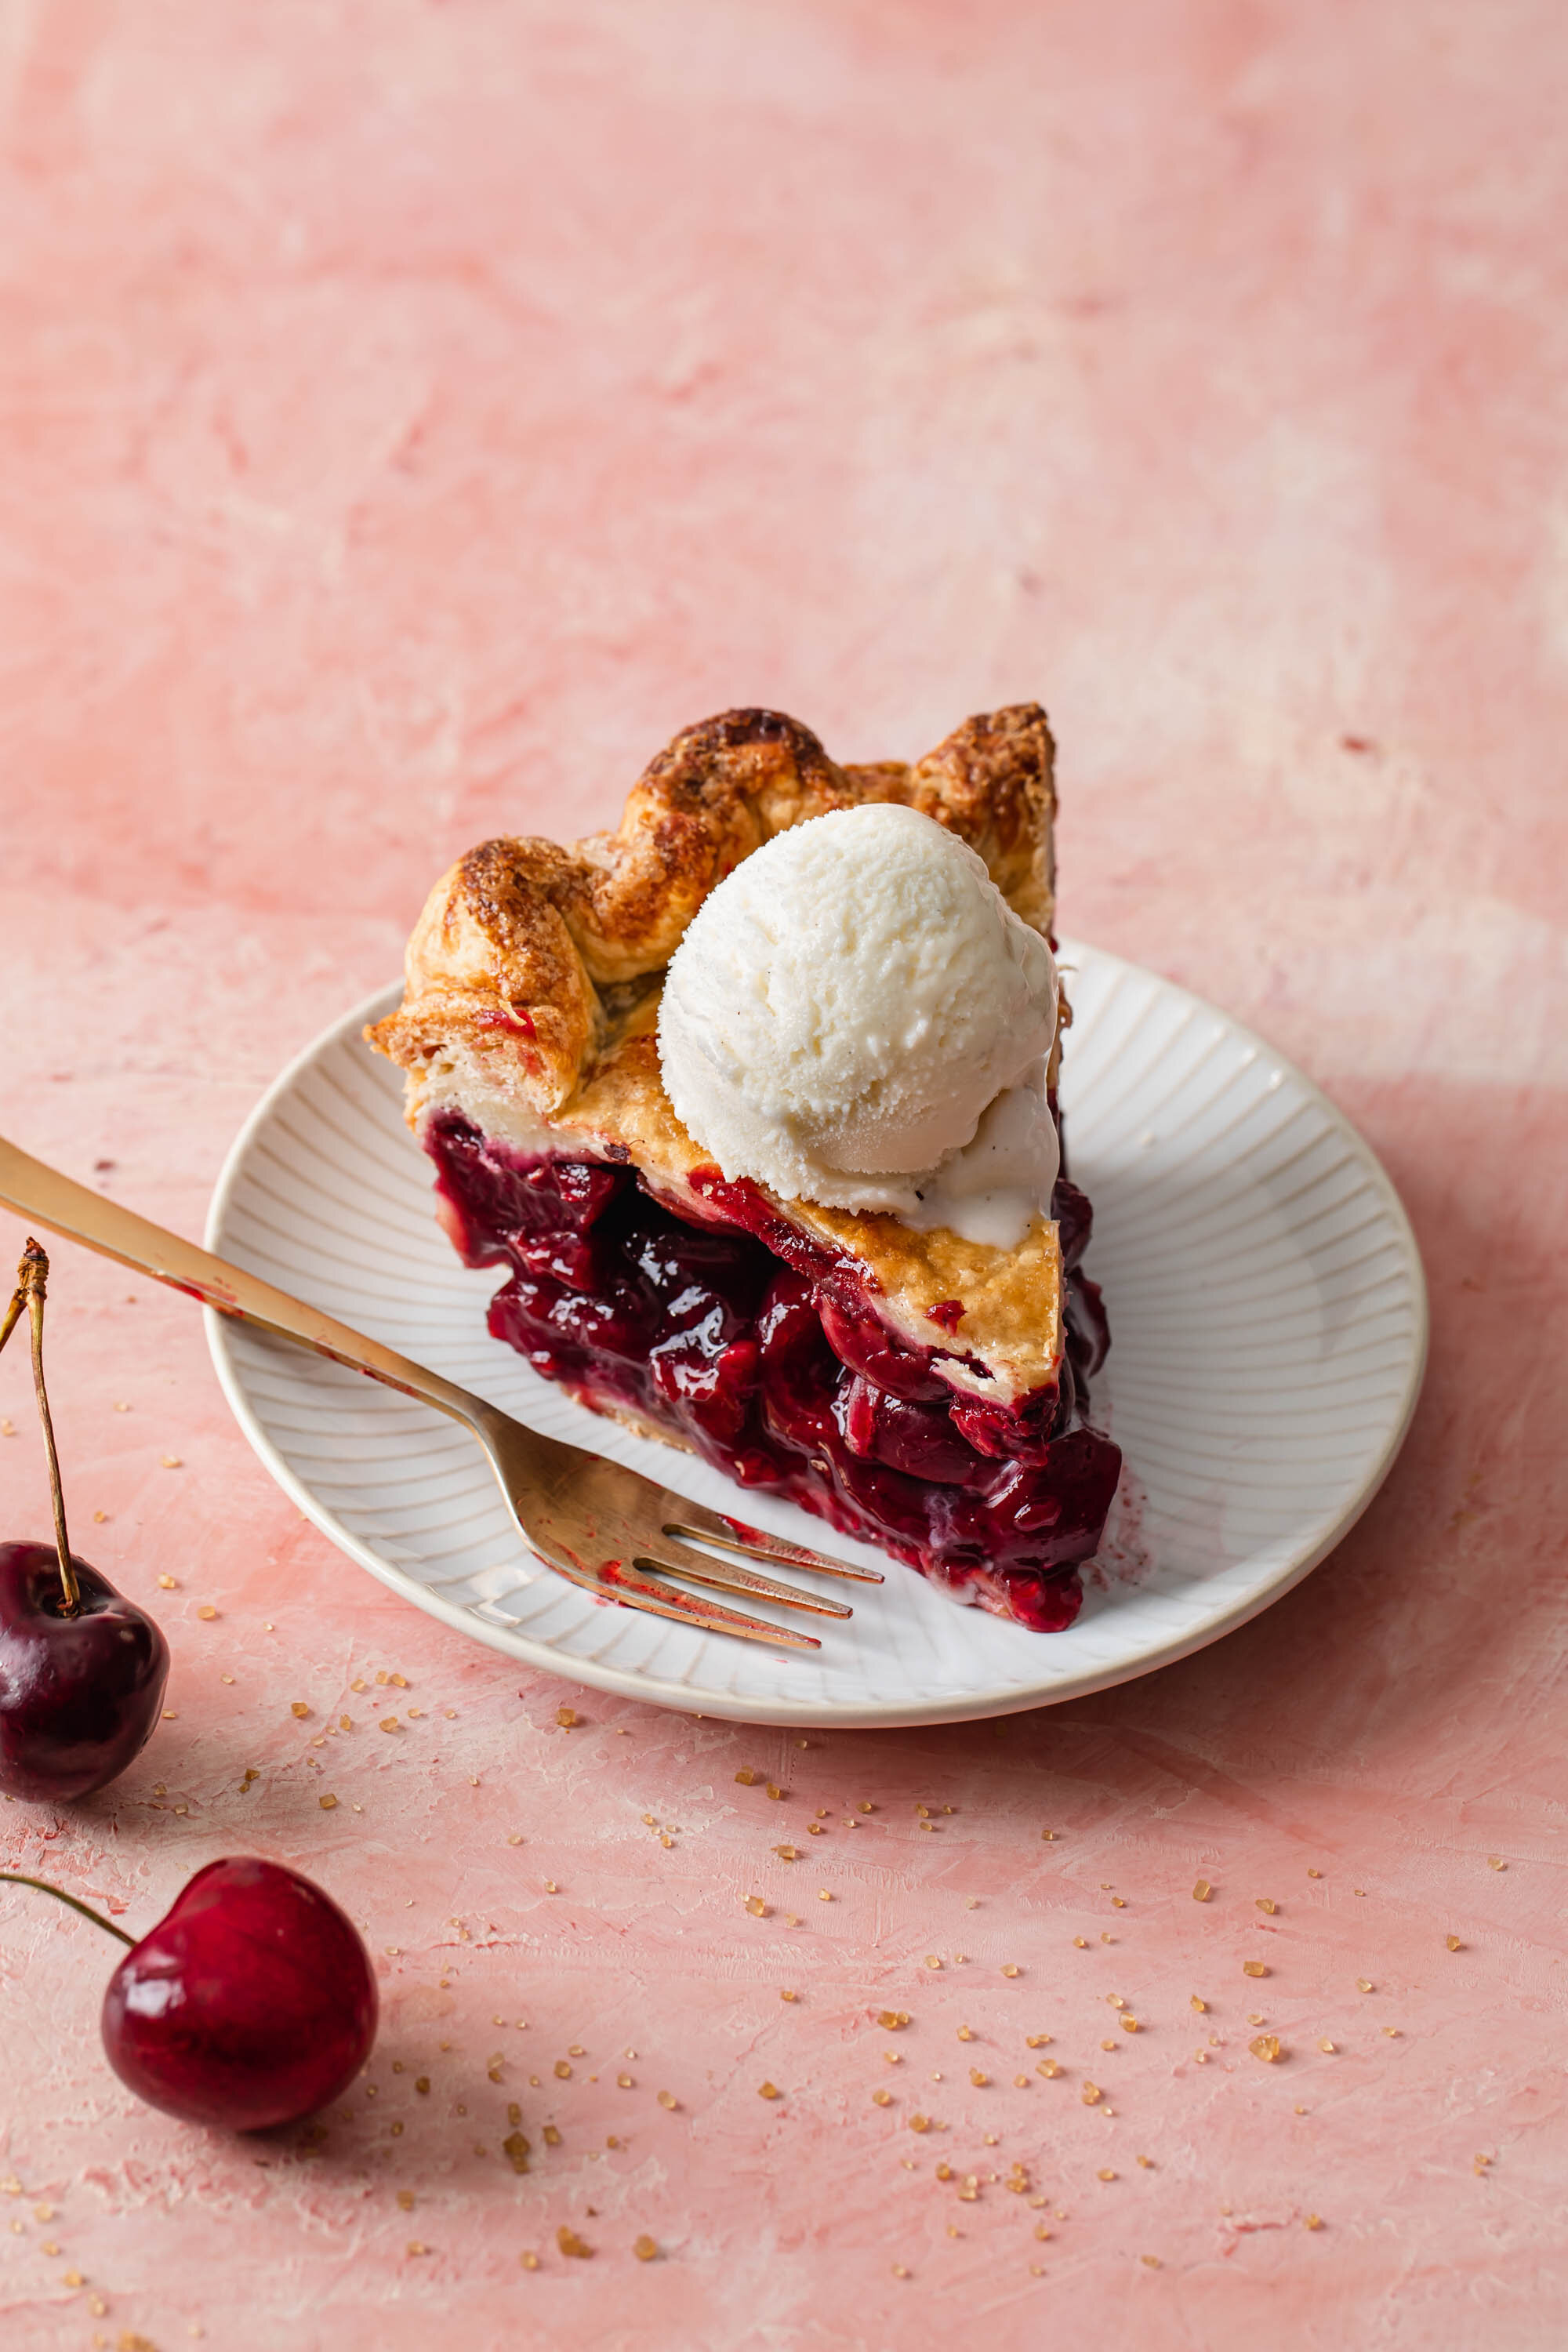 A slice of fresh cherry pie with vanilla ice cream on top.